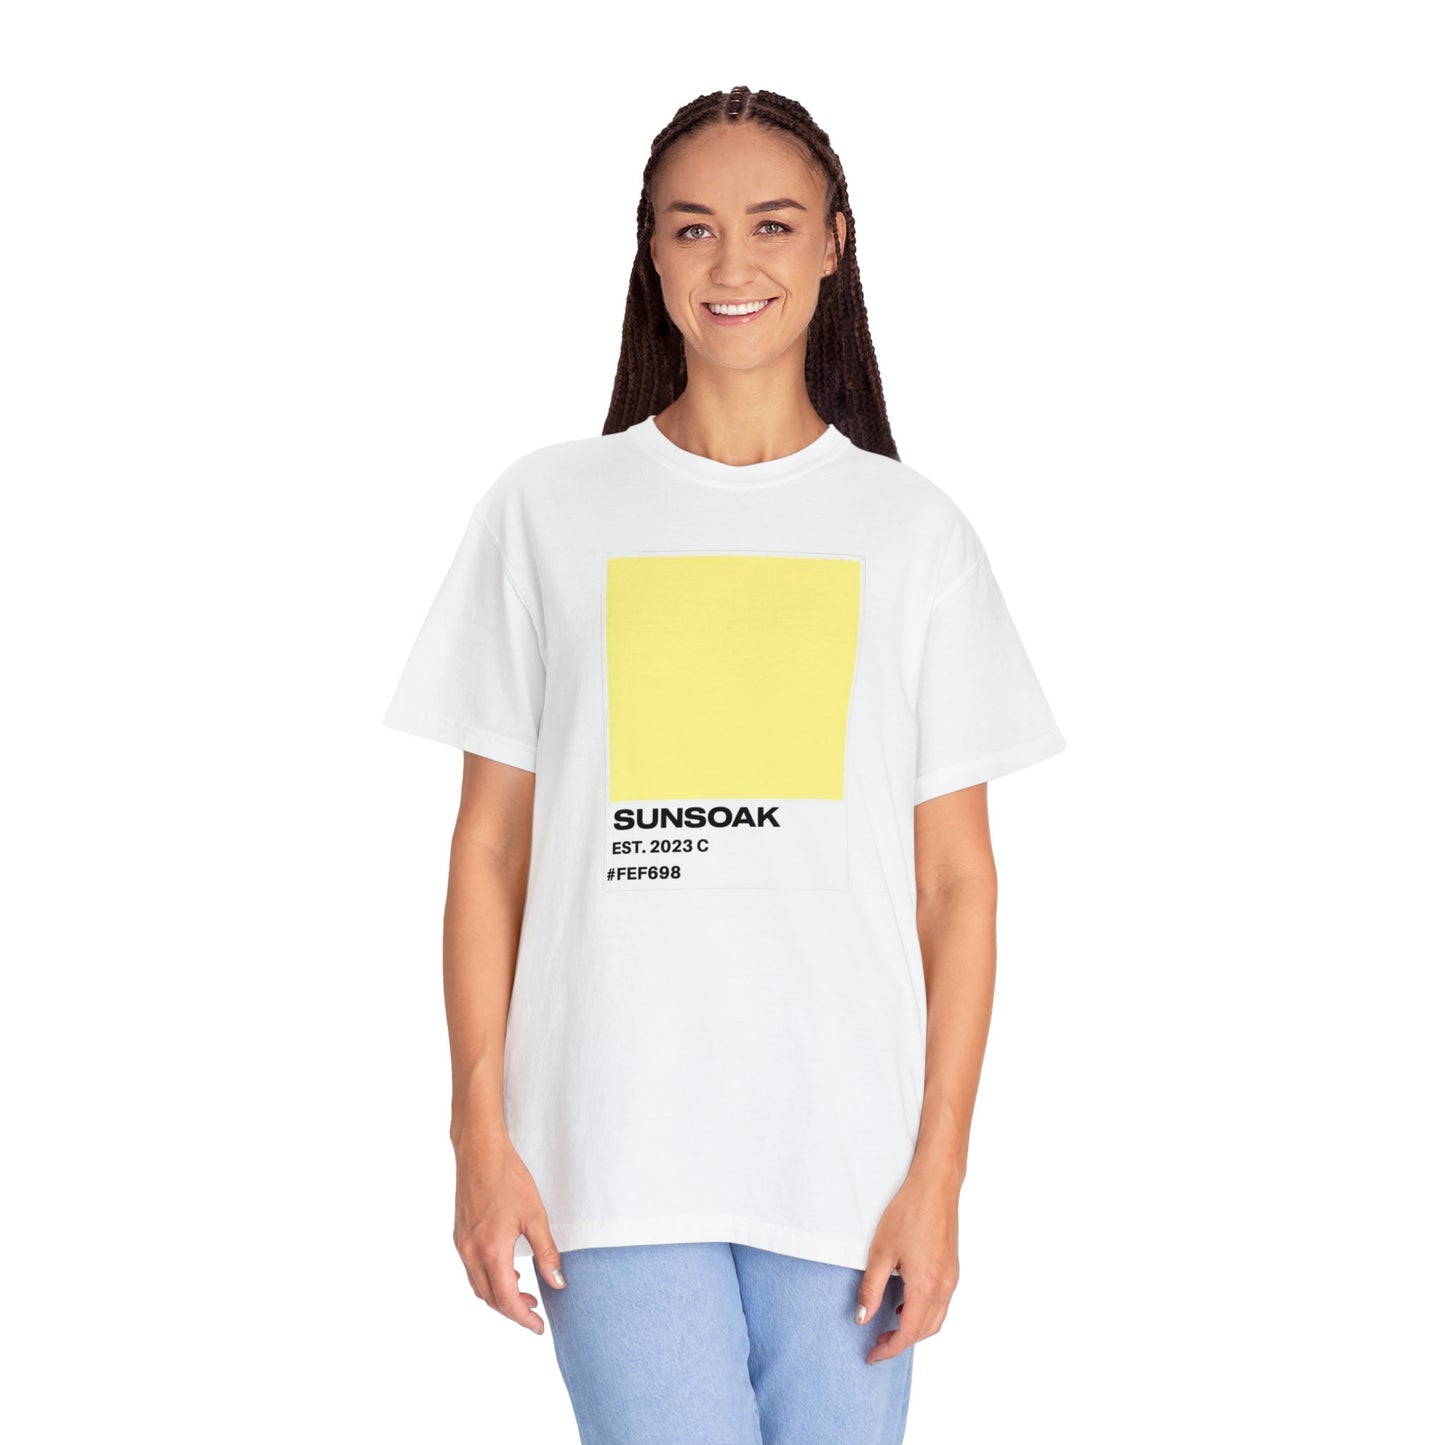 SUNSOAK "PANTONE" T-Shirt